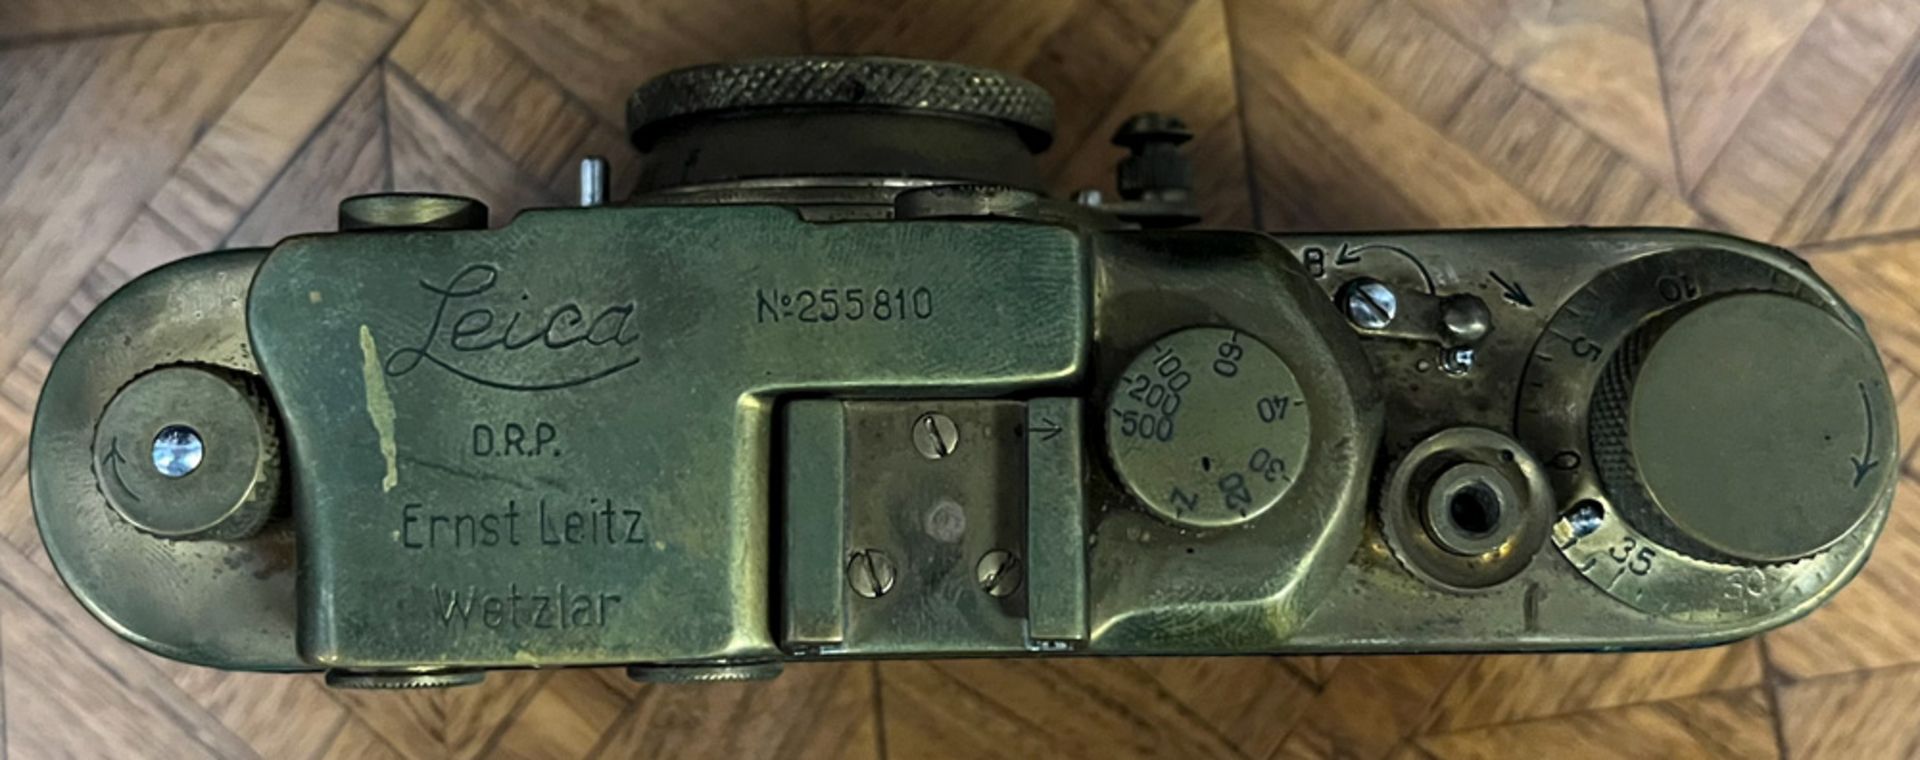 Kamera in Lederetui, Marke „Leica“, Ernst Leitz Wetzlar D.R.P., Modellnummer „255810“. (Funktion - Image 5 of 7